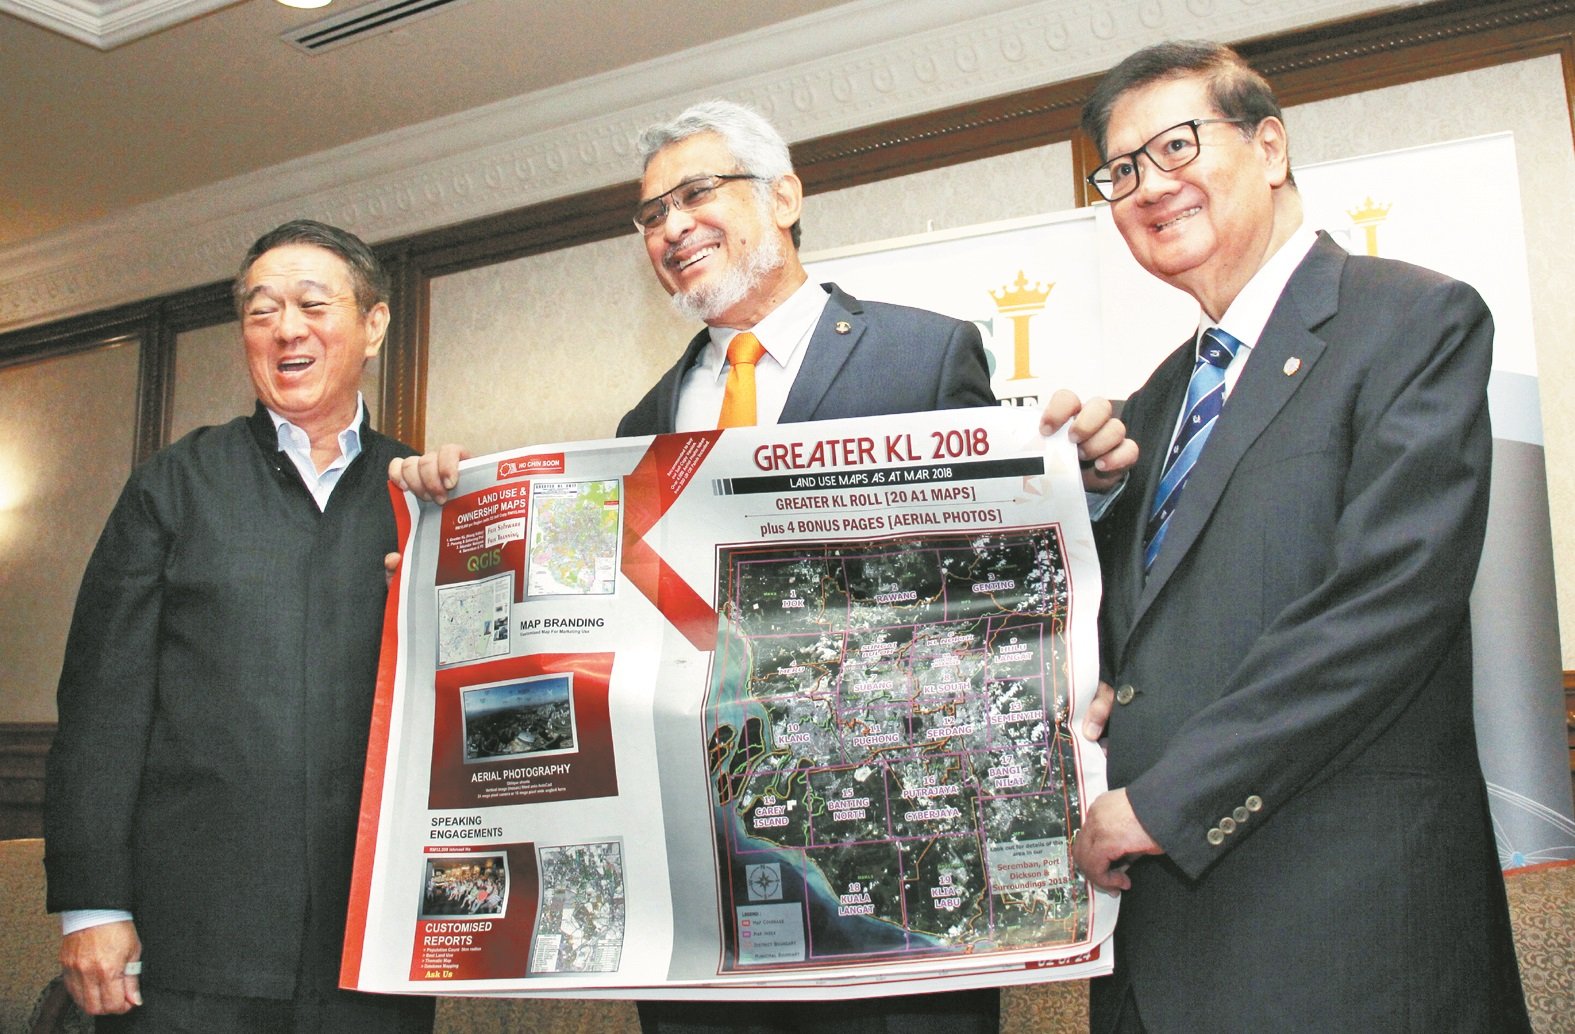 卡立沙末（中）与亚洲策略及领导研究院（ASLI）总执行长丹斯里杨元庆 （右）在论坛上展示吉隆坡大蓝图。左为绿野集团创办人丹斯里李金友。